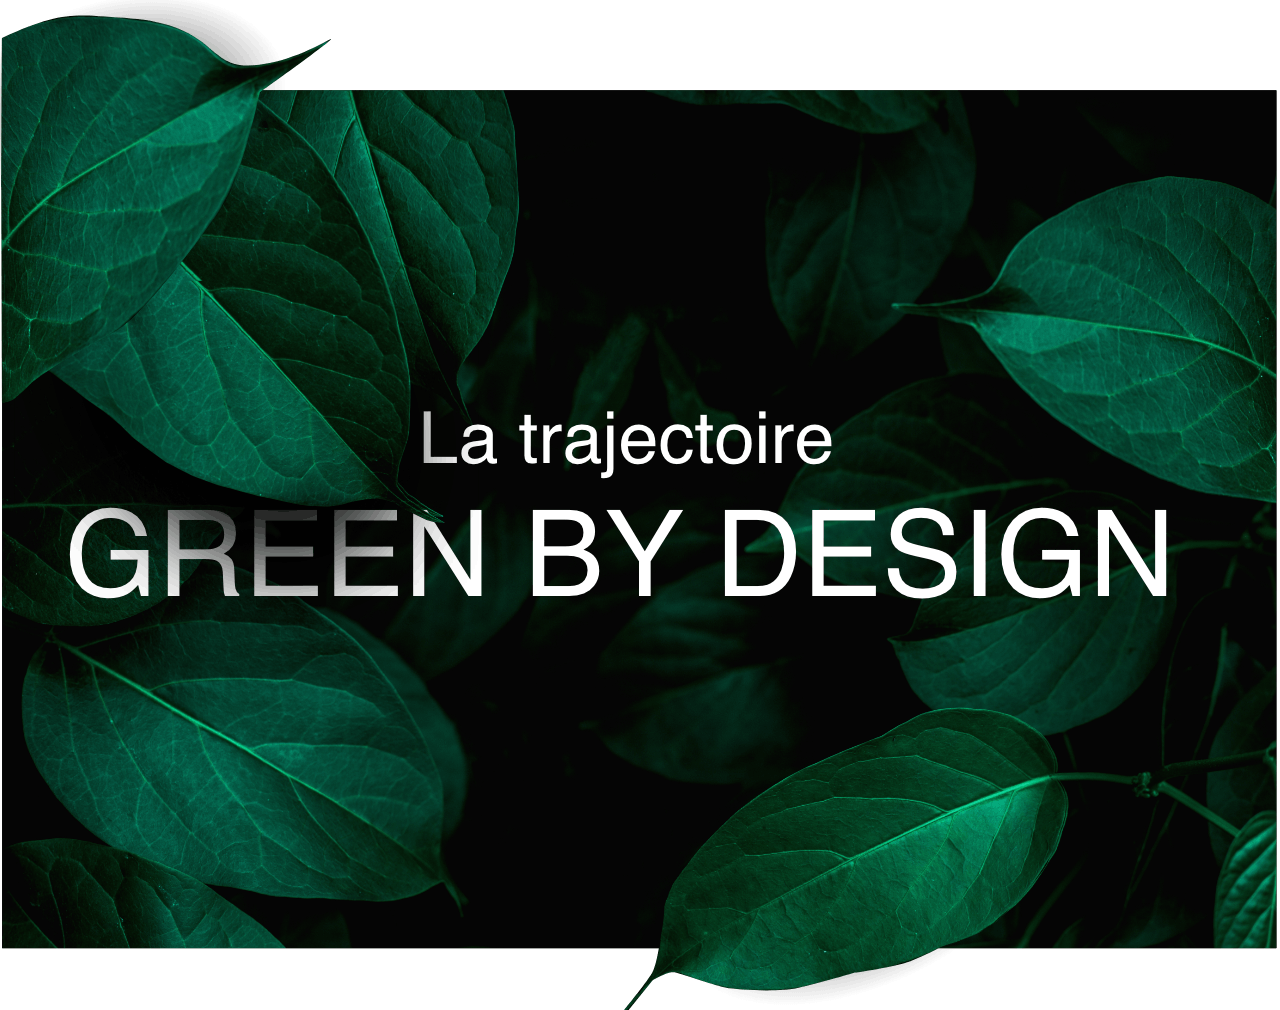 Le texte 'la trajectoire Green By Design' affiché sur fond noir et entouré de feuilles vertes